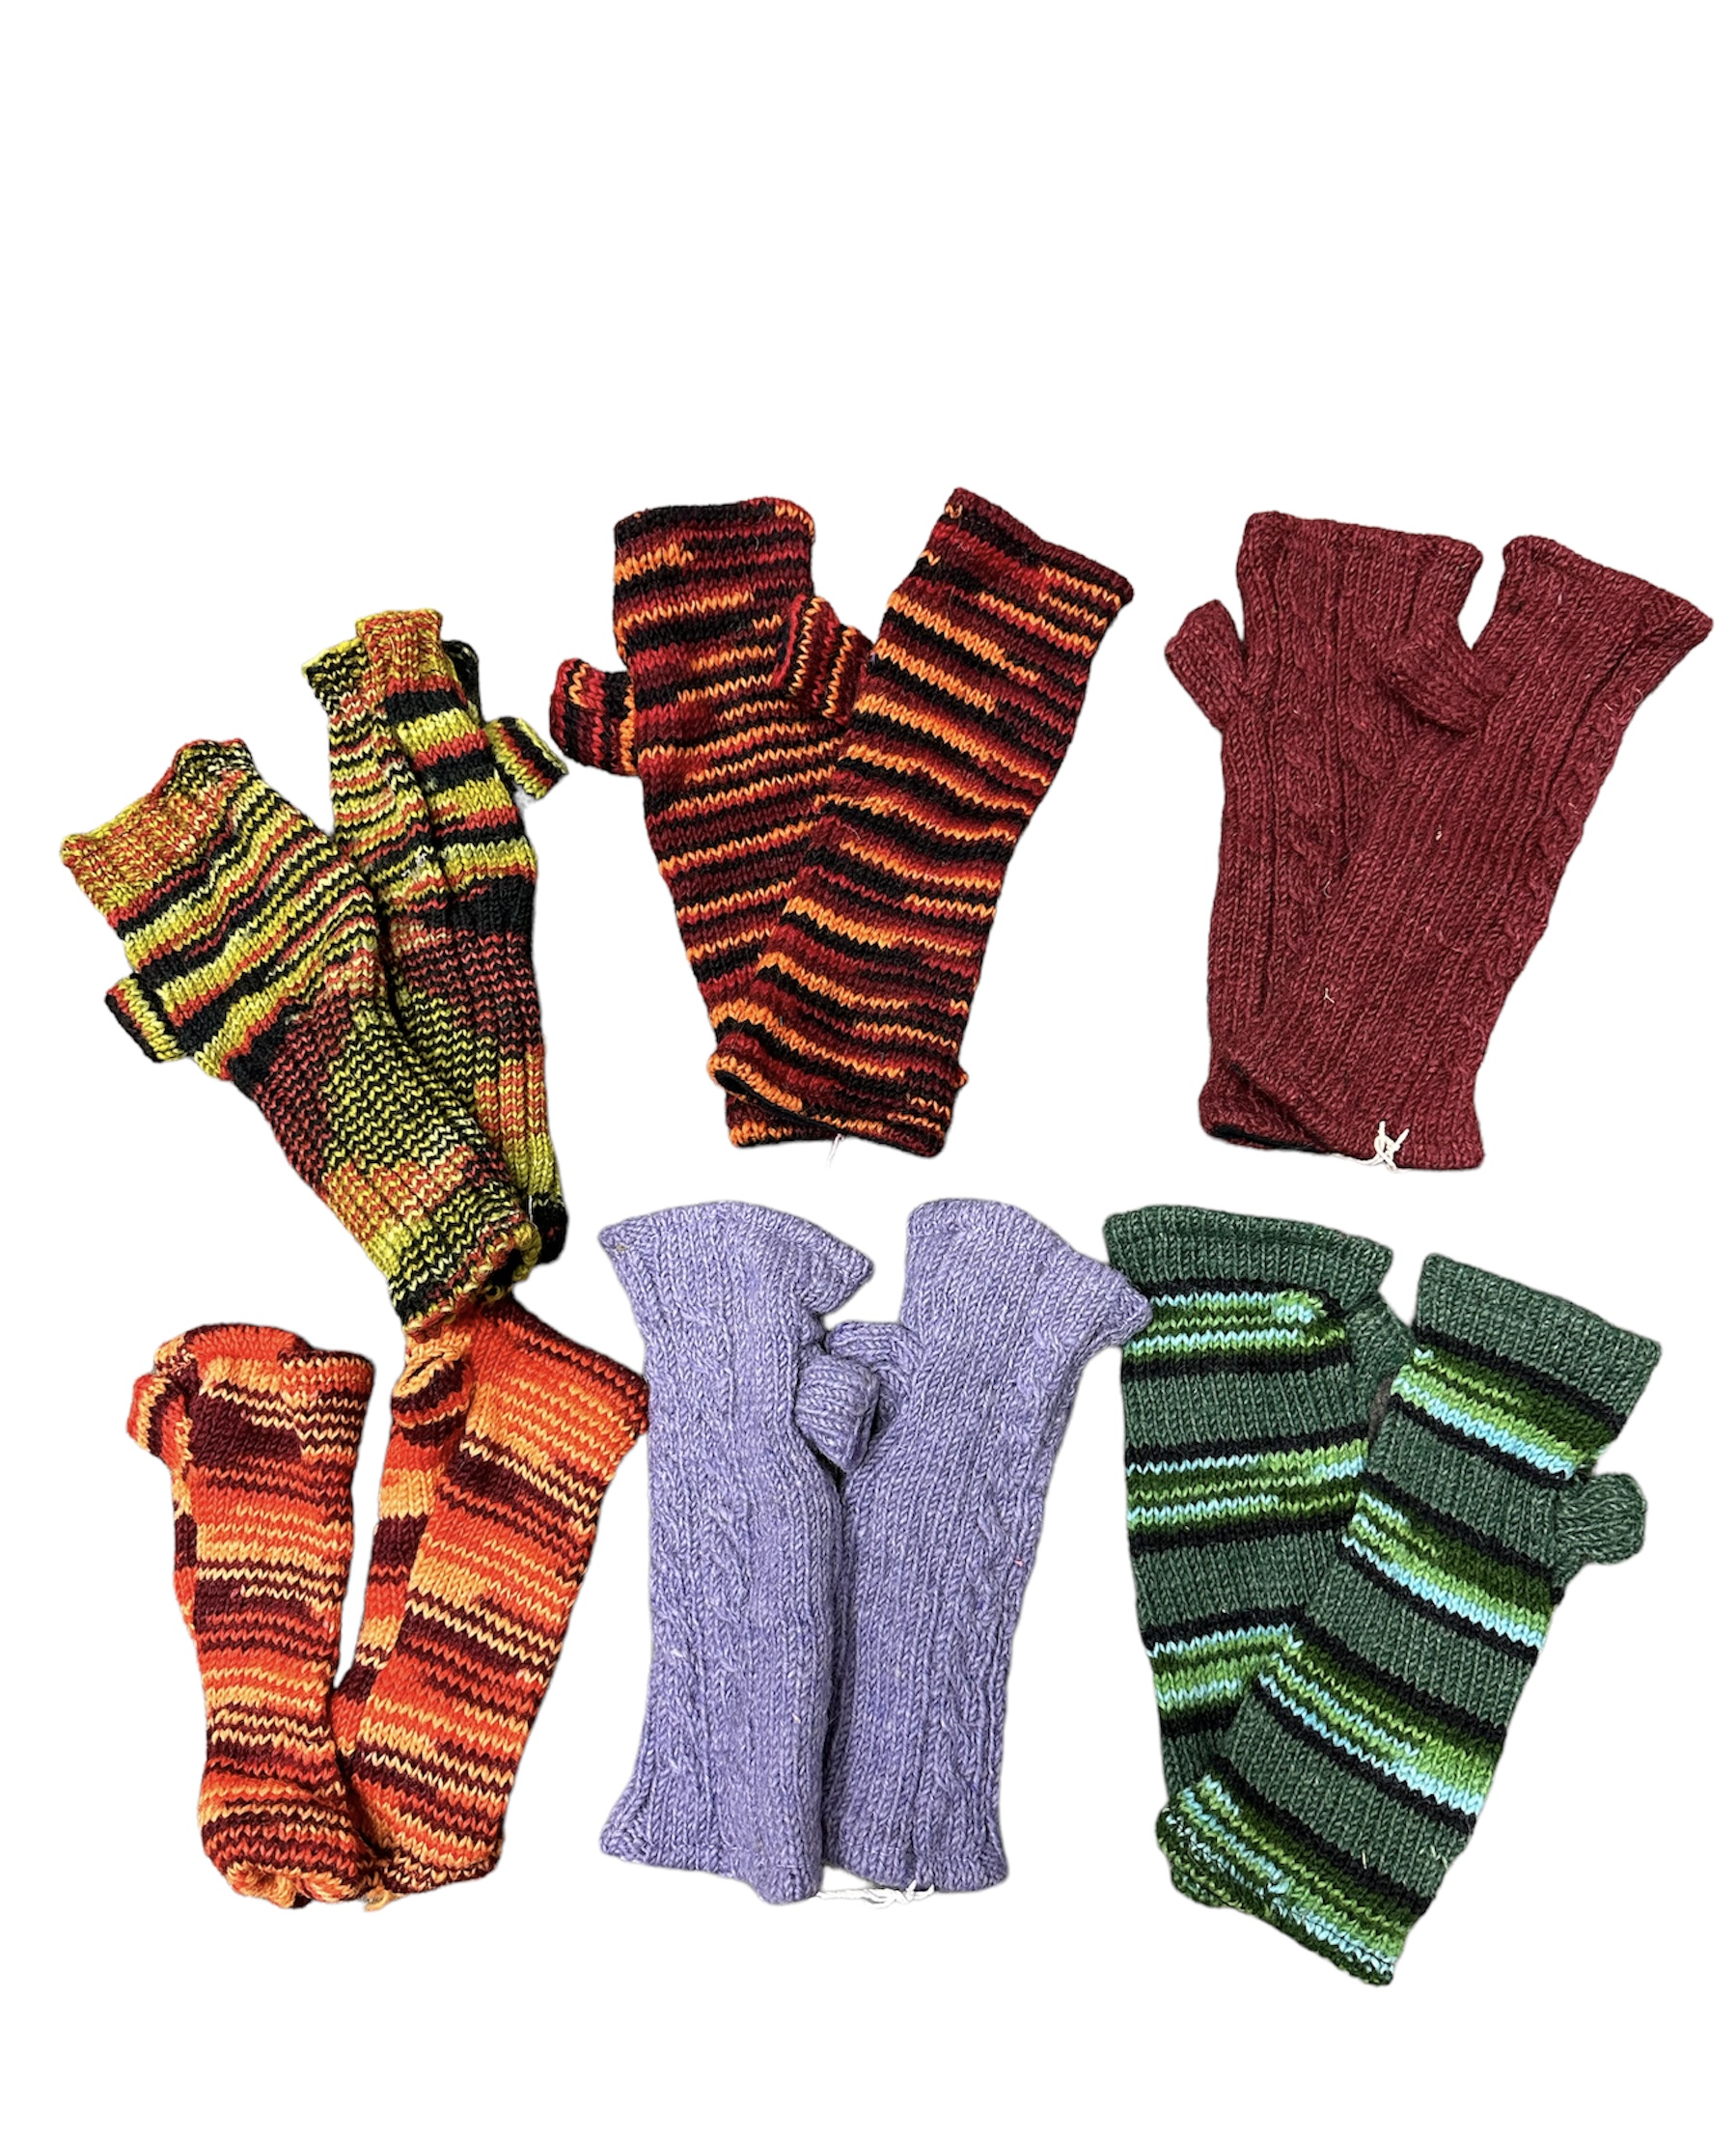  Knitted Wool Handwarmers  (HW7)